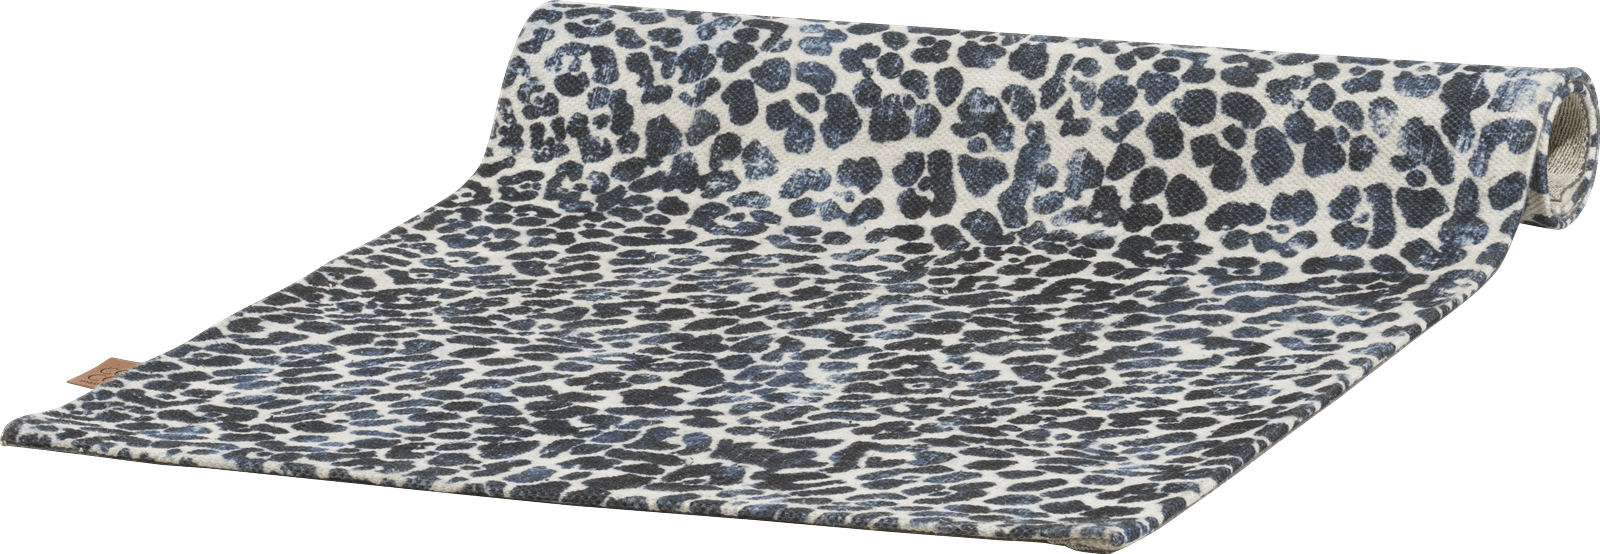 XOOON - Coco Maison - Leopard carpet 90x150cm